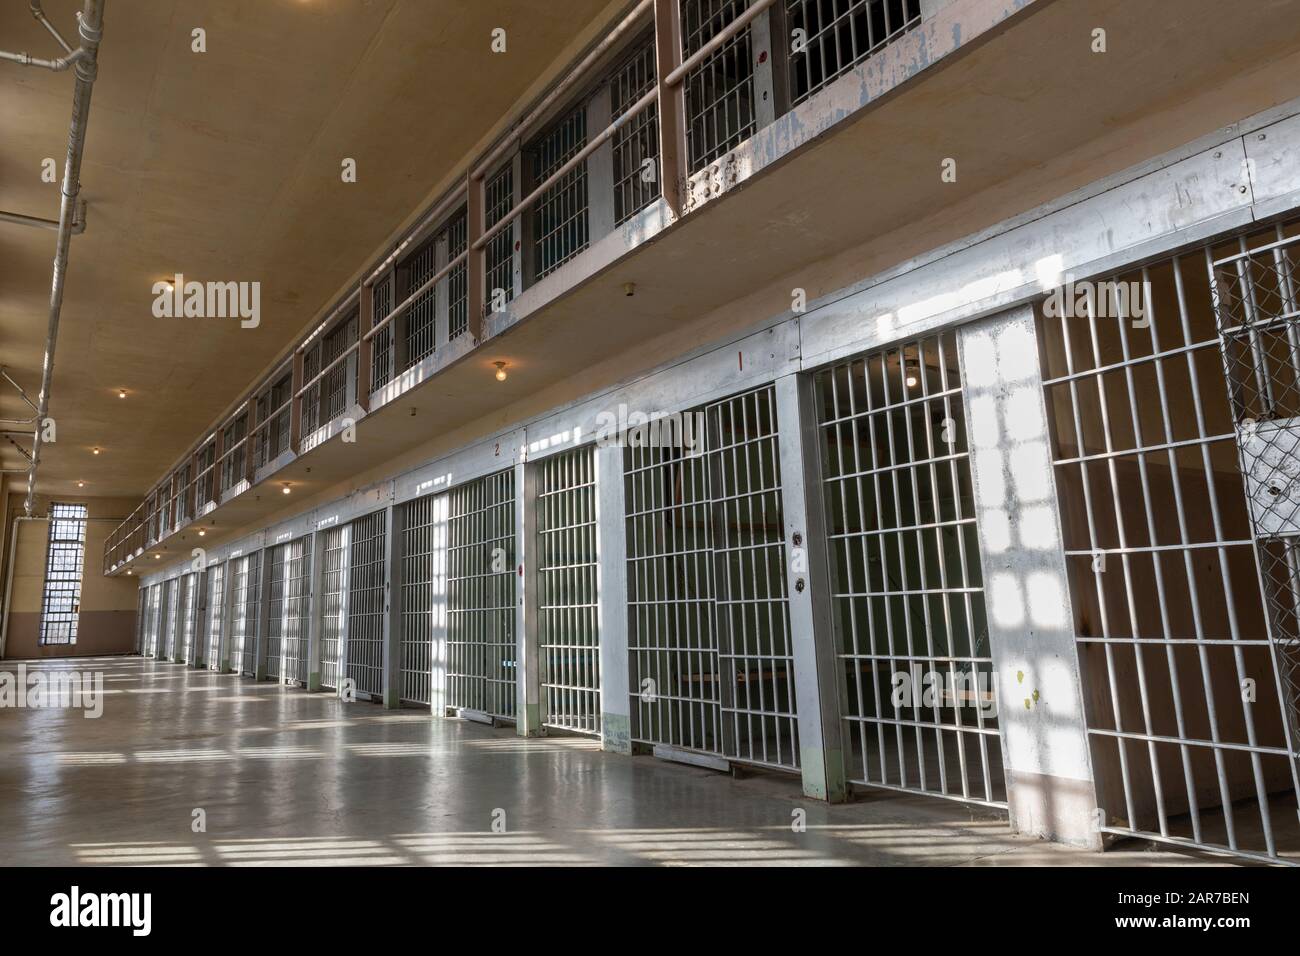 Weitwinkelansicht von Gefängnissen oder Gefängnisbars, die von der Sonne beleuchtet werden Stockfoto